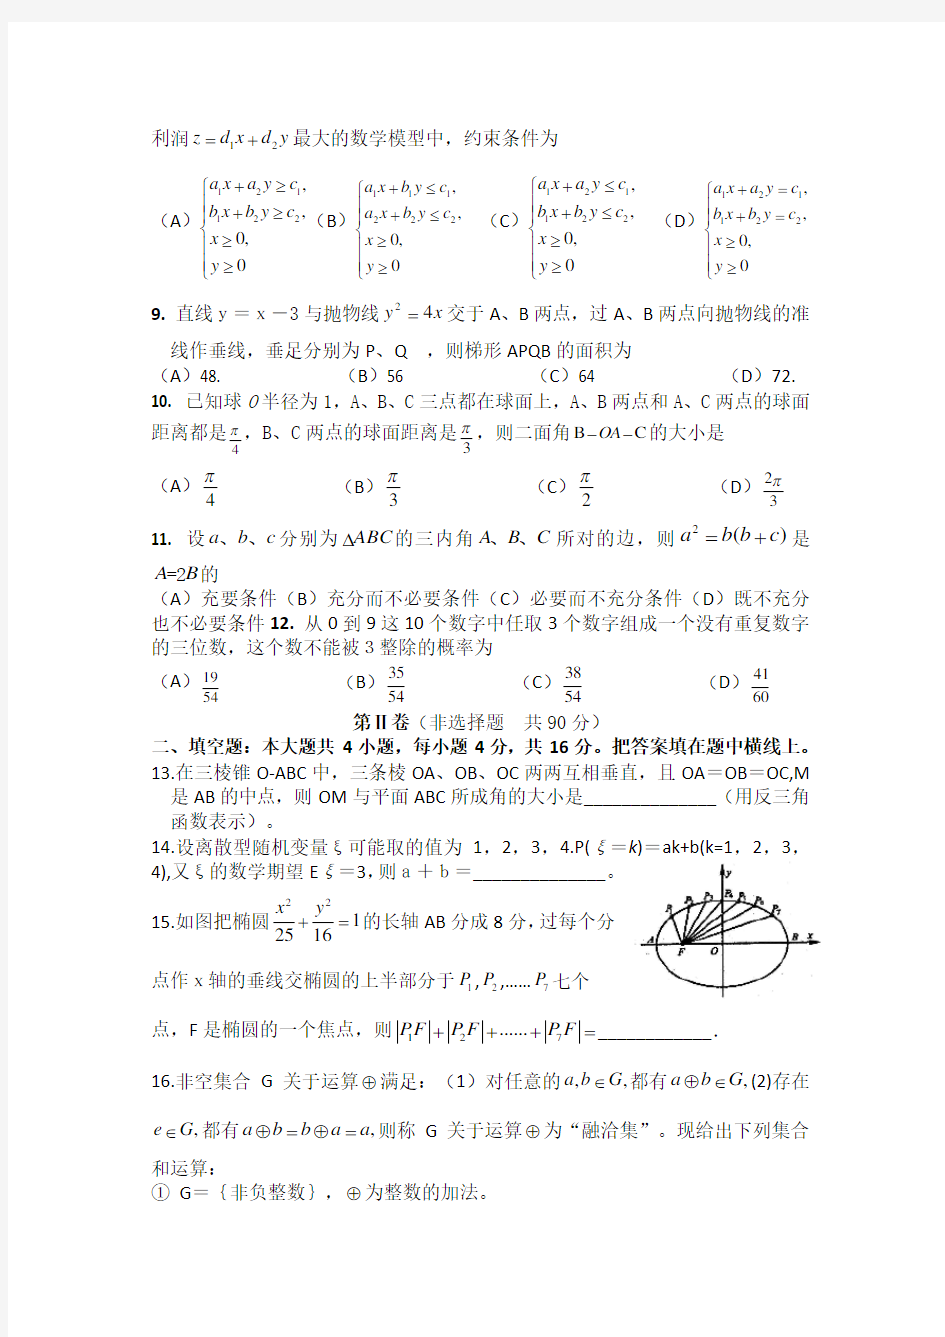 2006年四川高考理科数学试题及答案详解